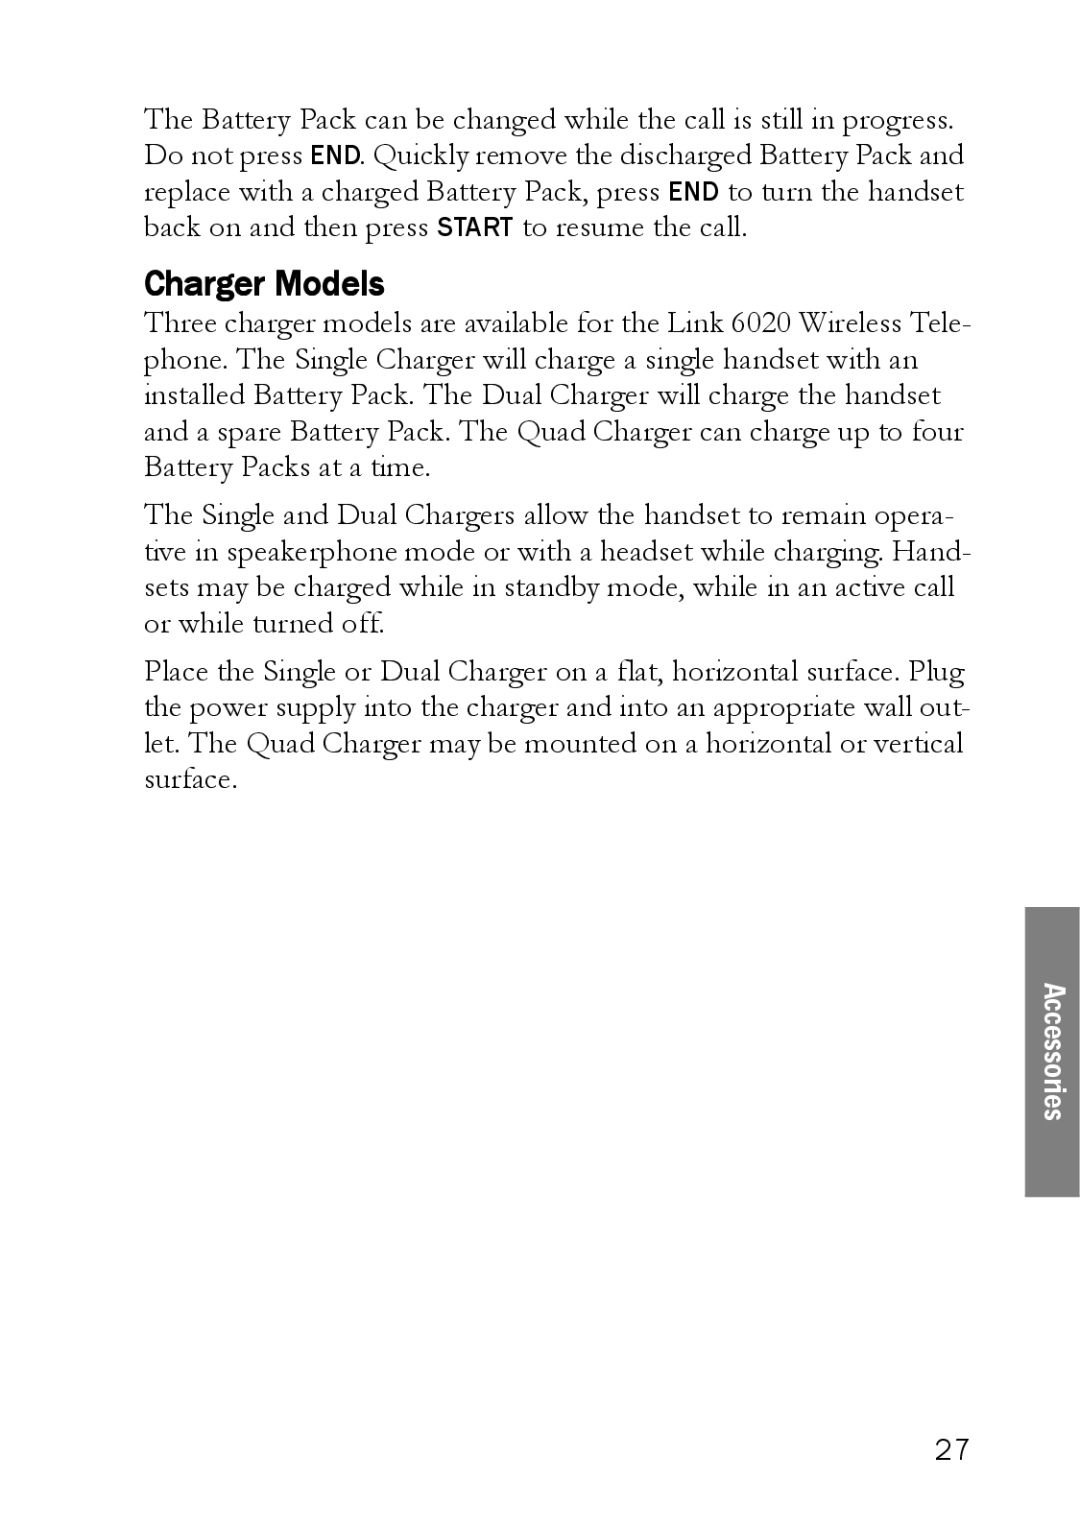 SpectraLink LINK 6020 manual Charger Models 